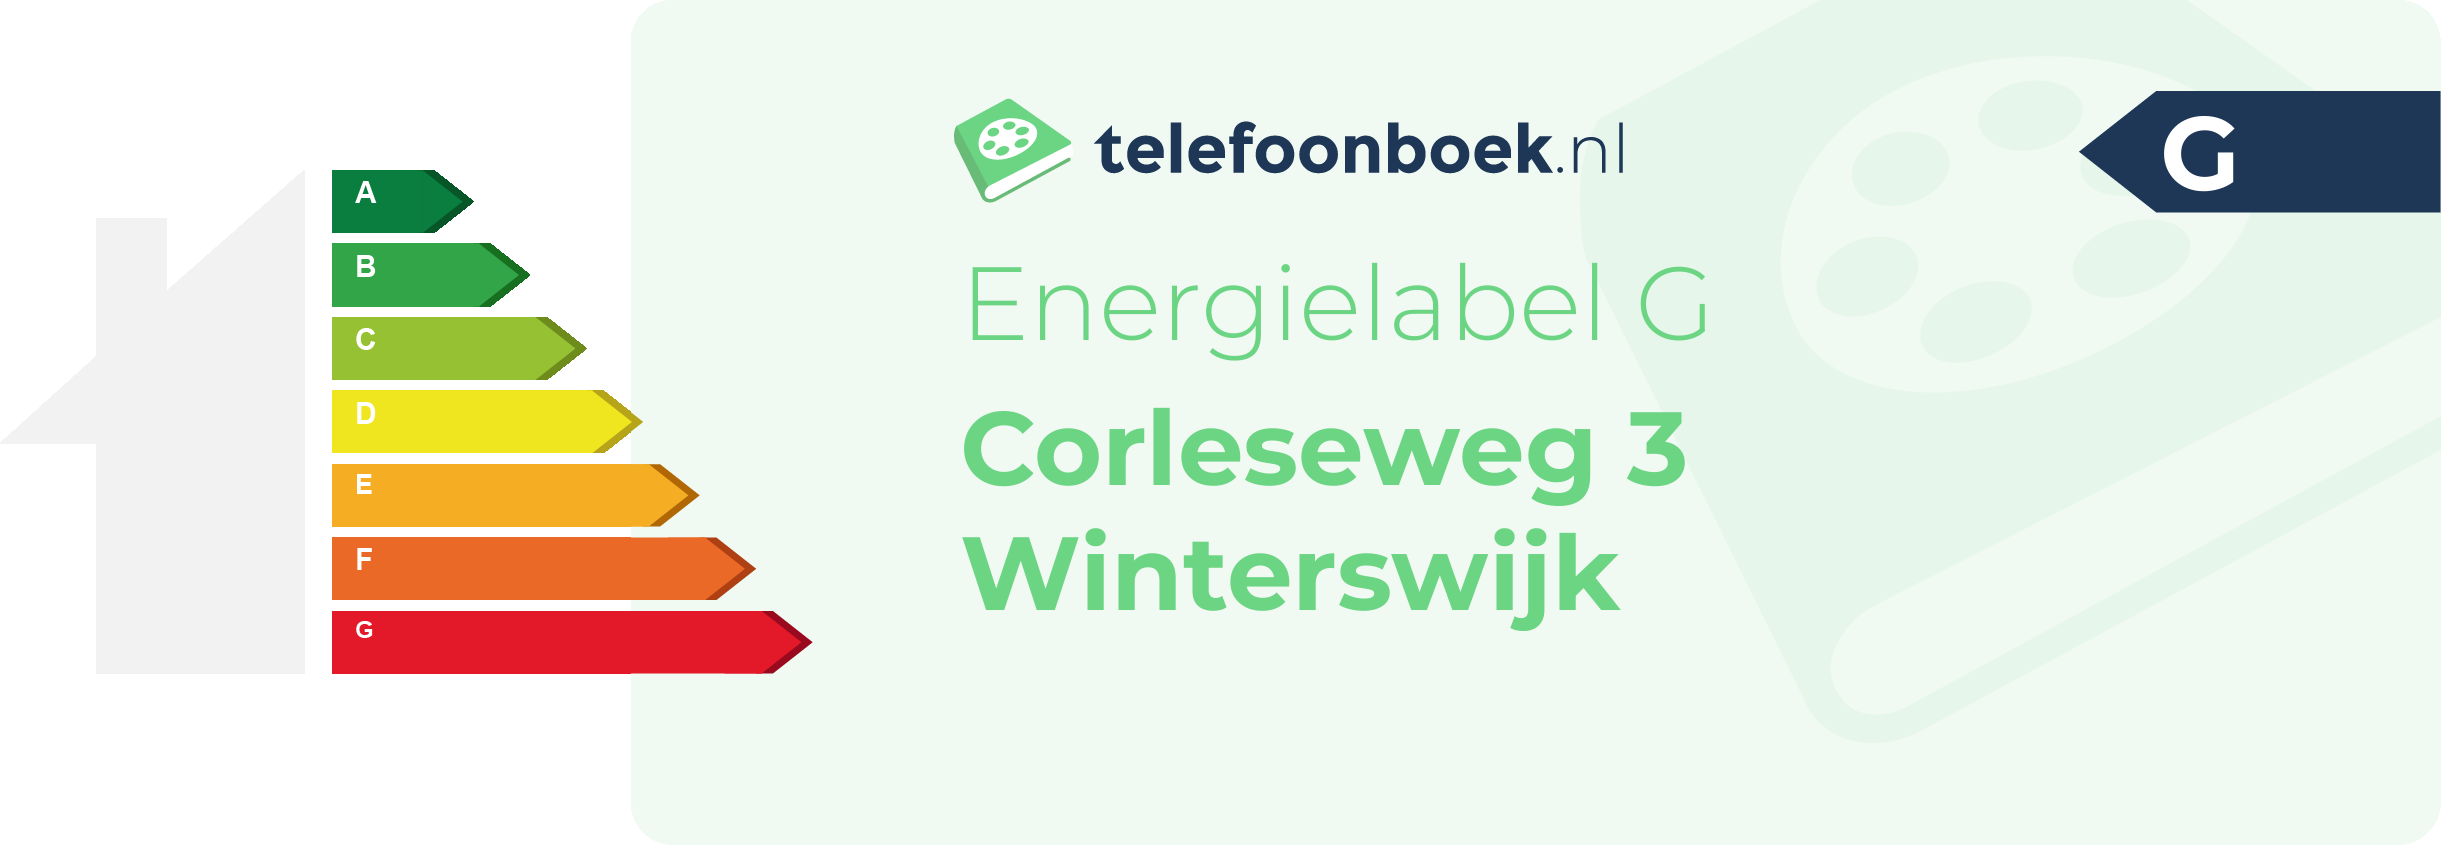 Energielabel Corleseweg 3 Winterswijk